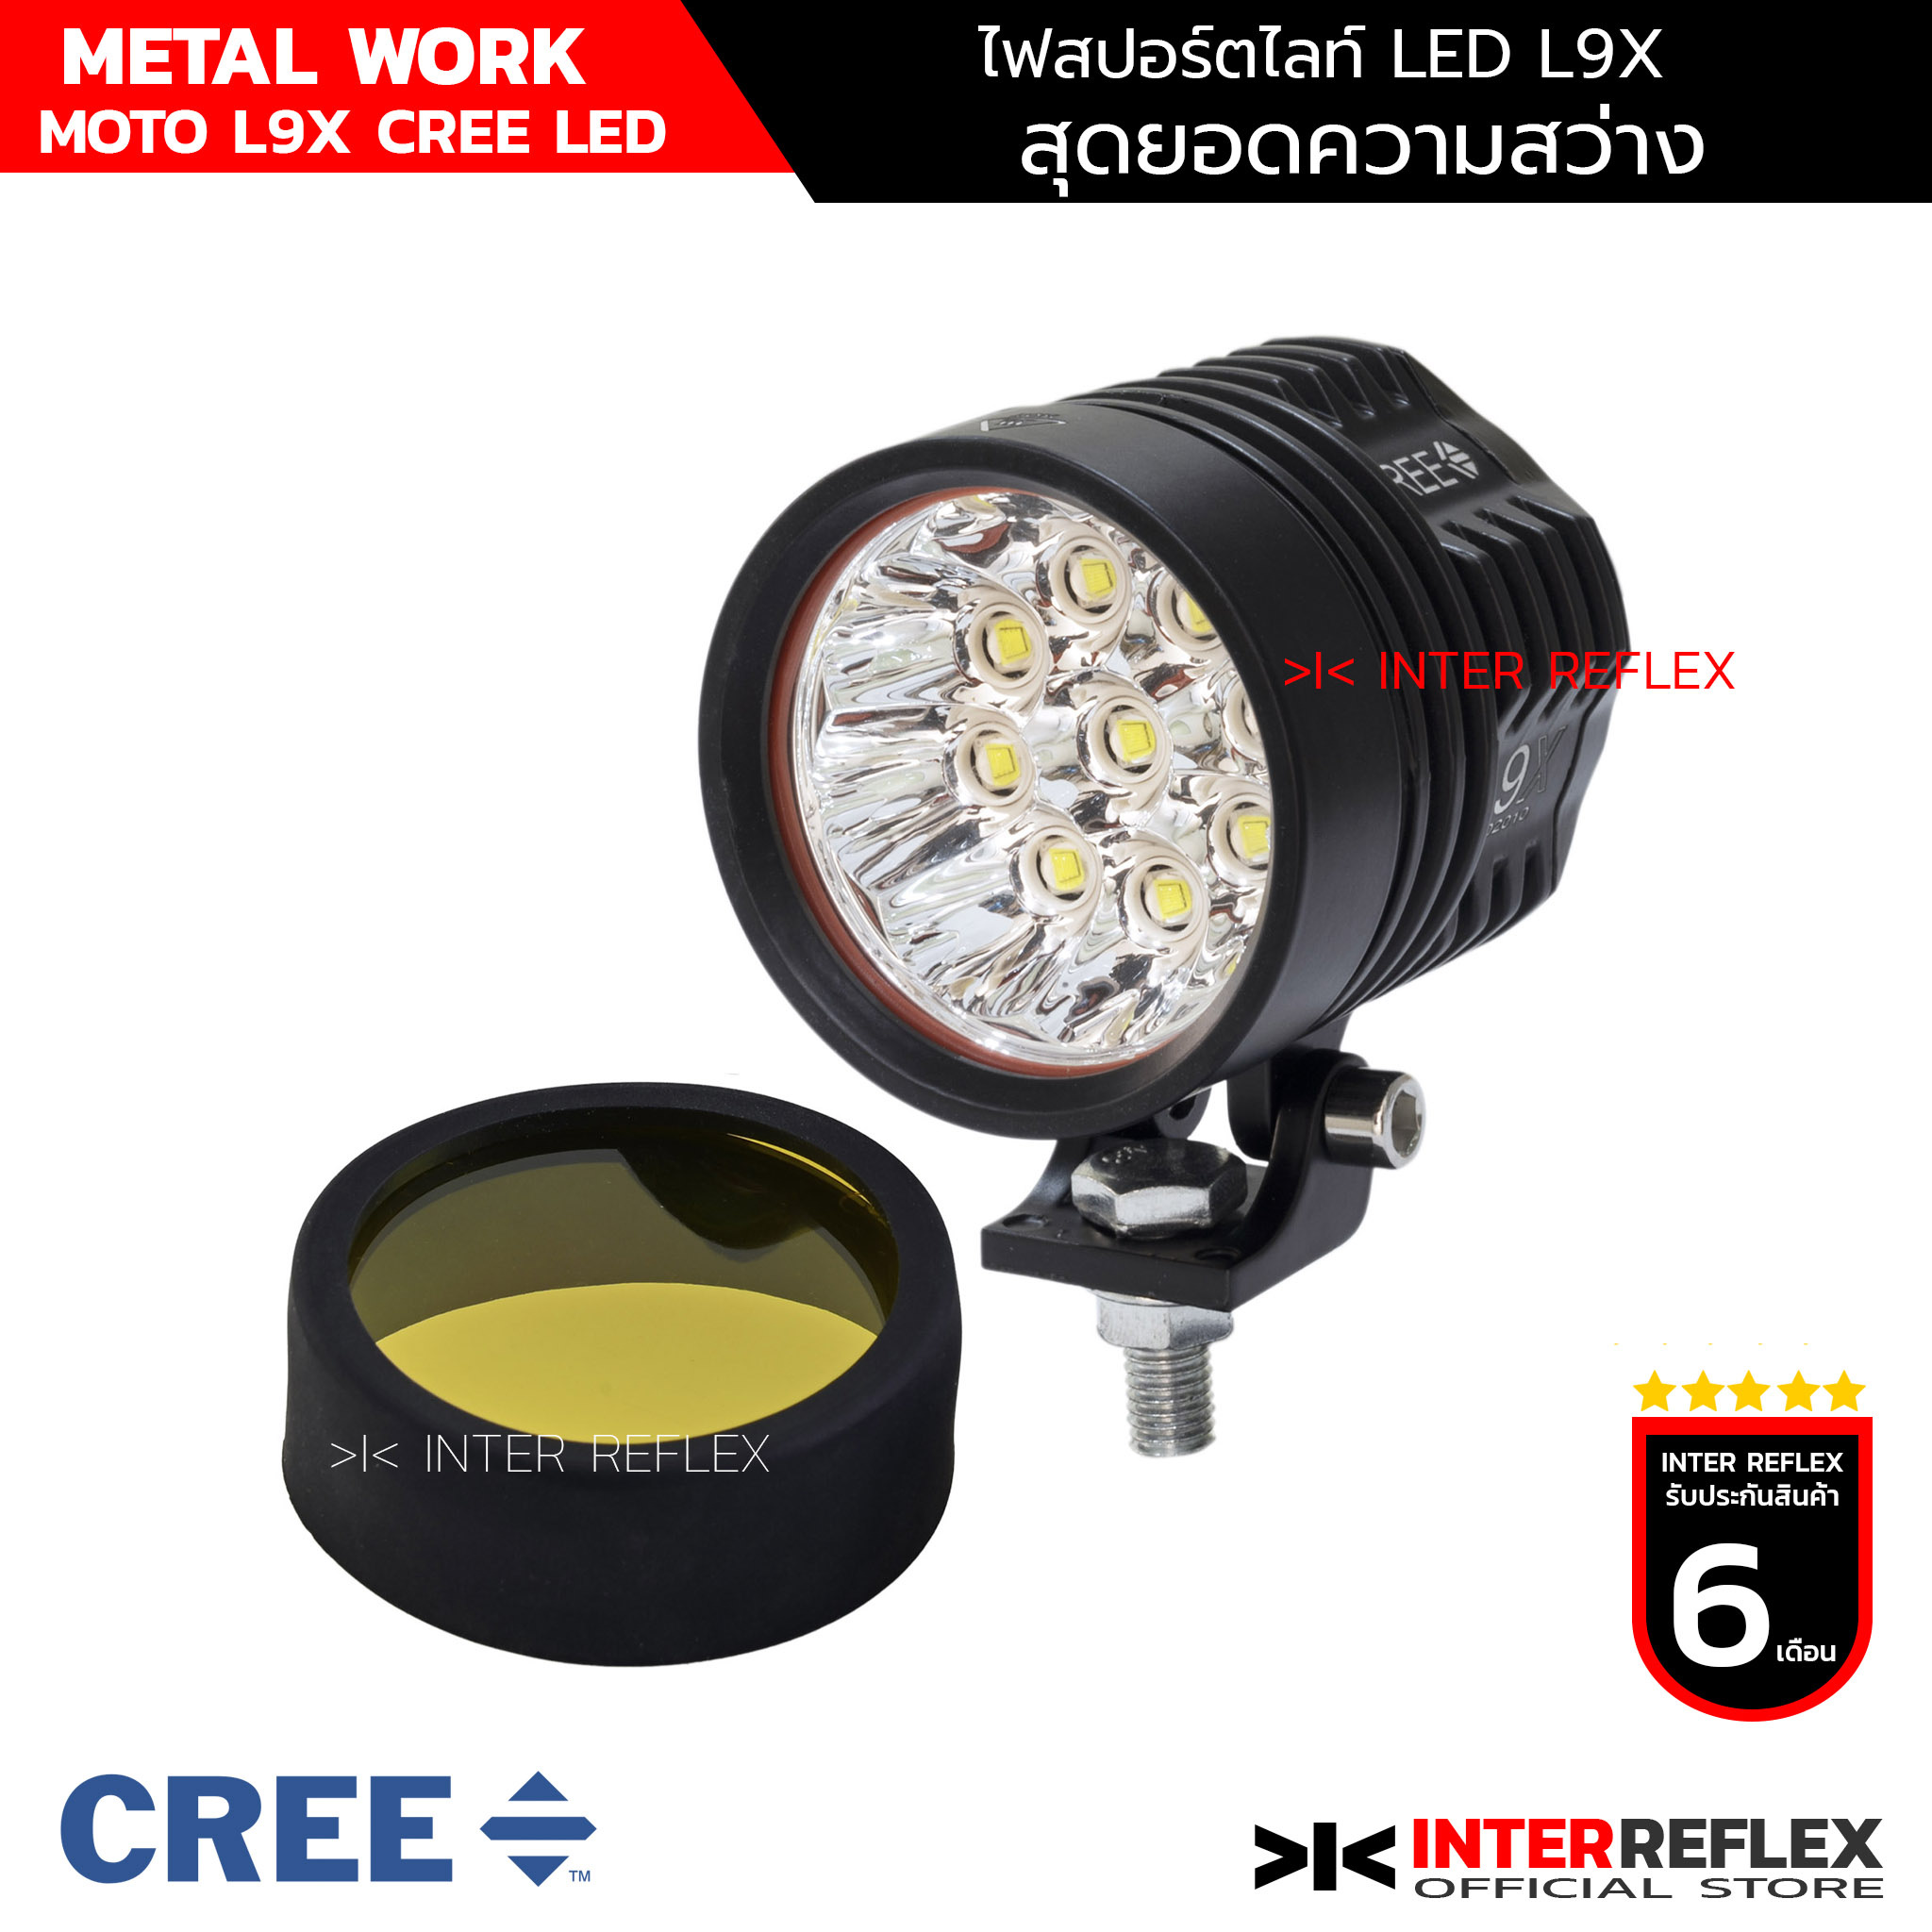 ไฟ LED ติดมอเตอร์ไซค์ L9X CREE LED METAL WORK พร้อมเลนส์สีเหลือง จำนวน 1 ชุด